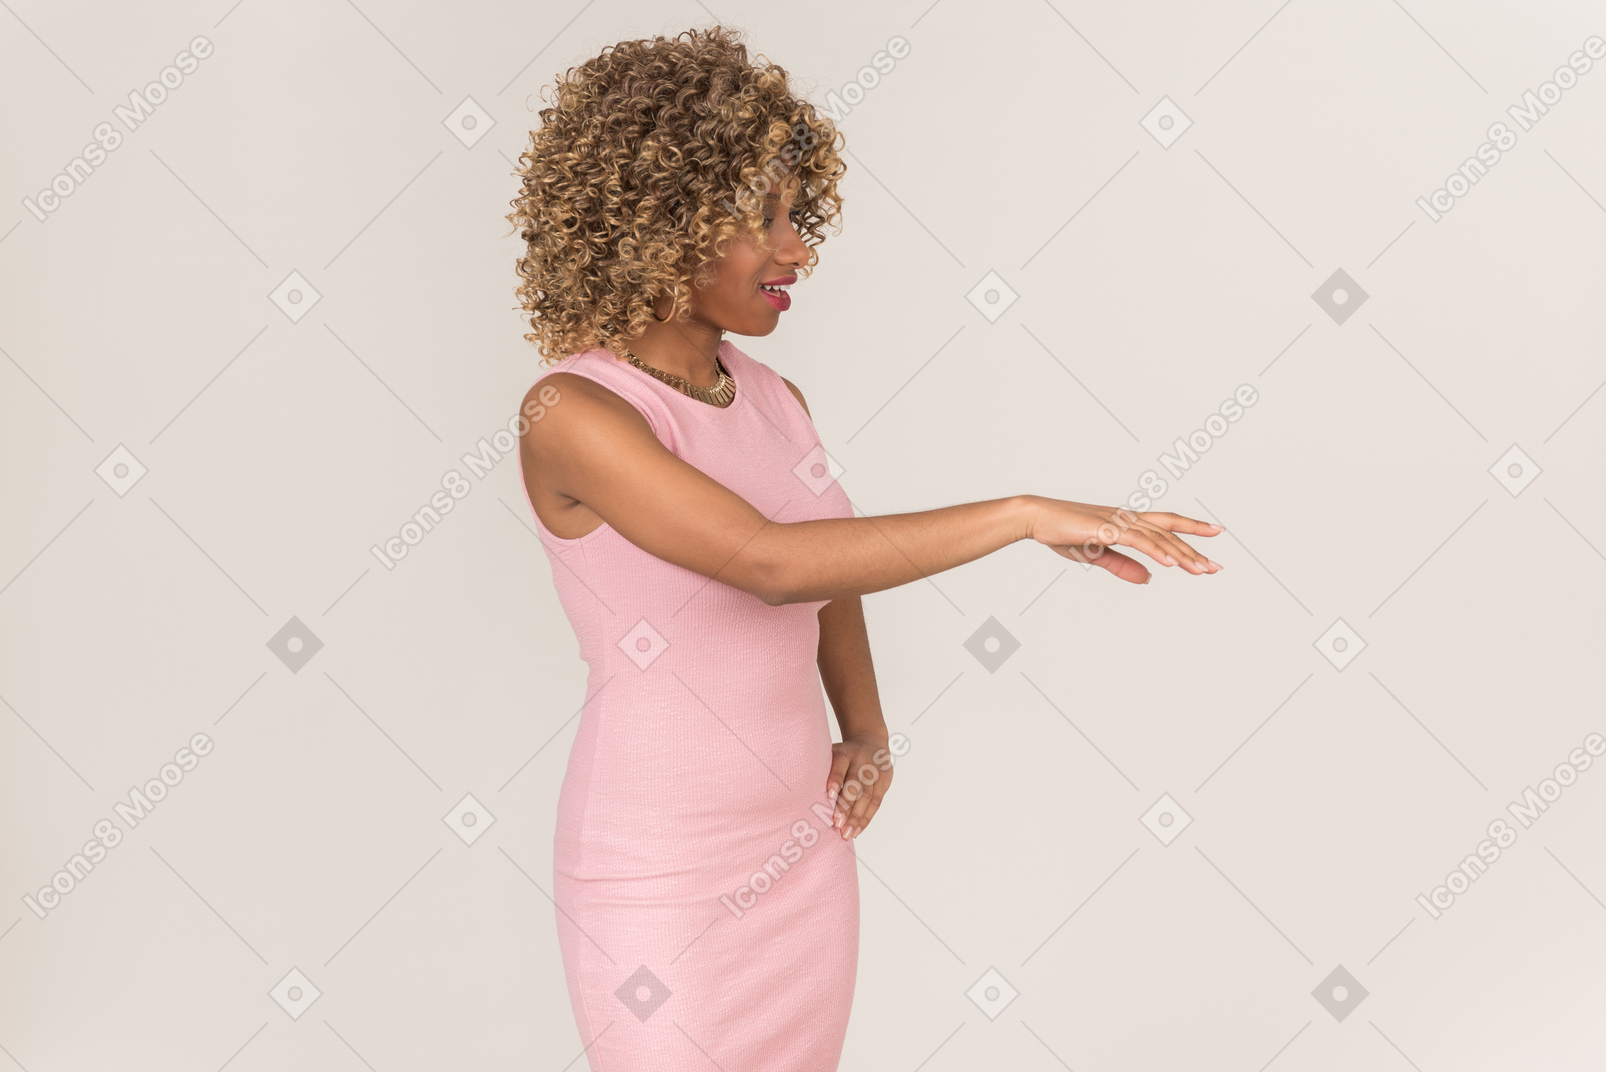 穿着粉红色连衣裙的女人举起手臂